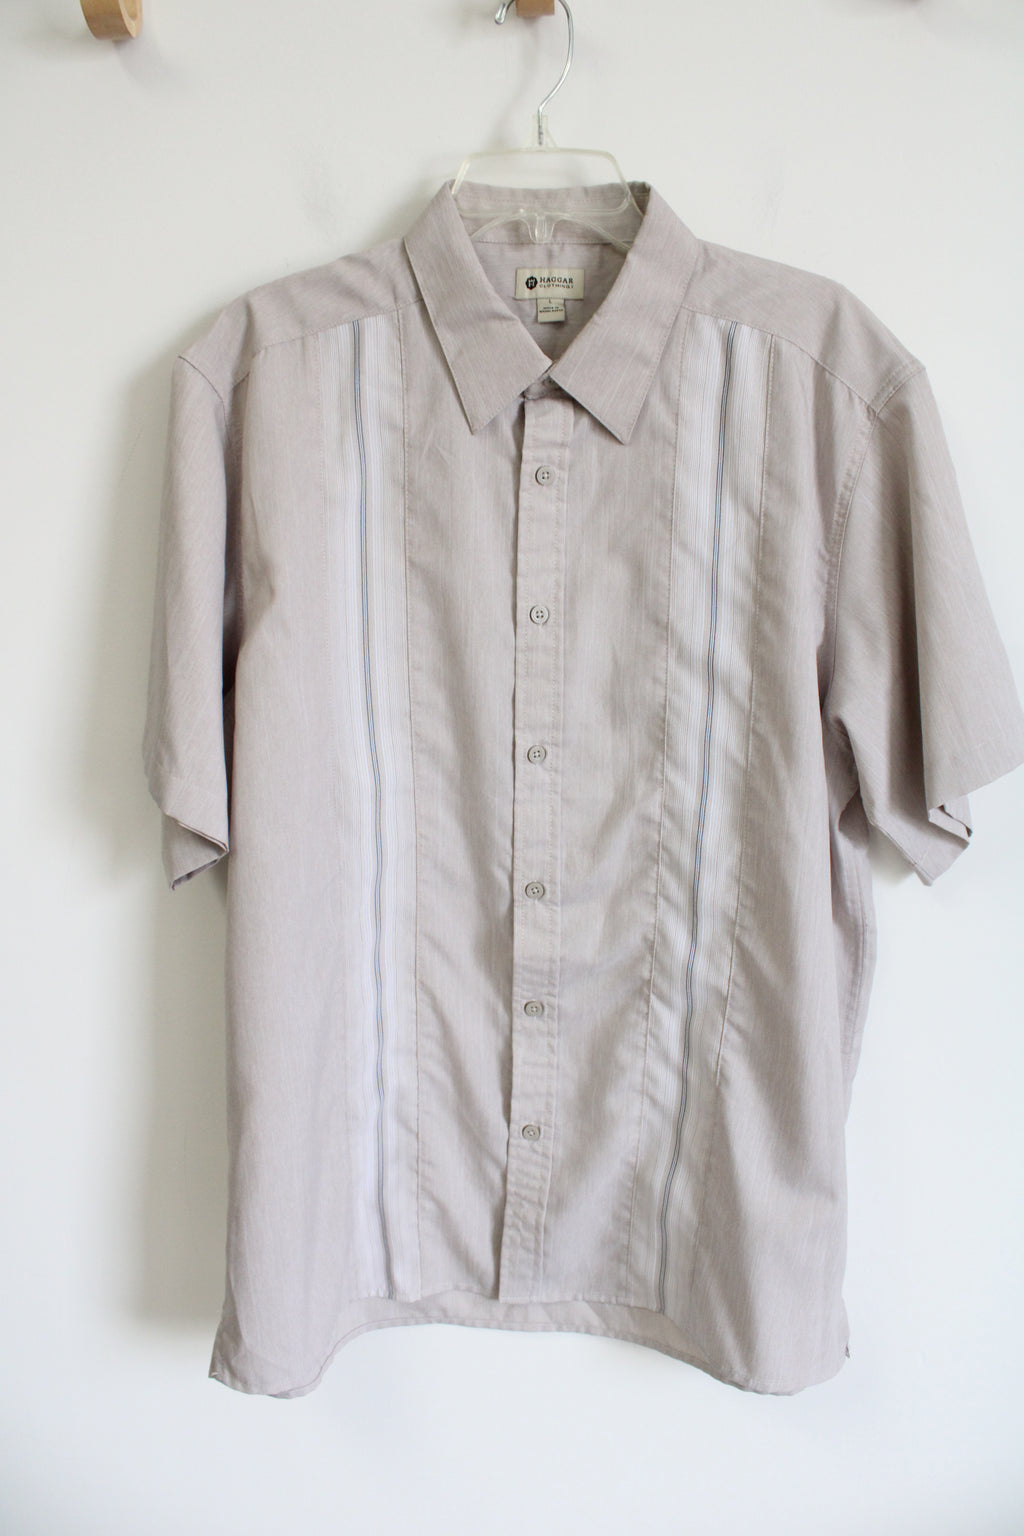 Haggar Clothing Tan Button Down Shirt | L